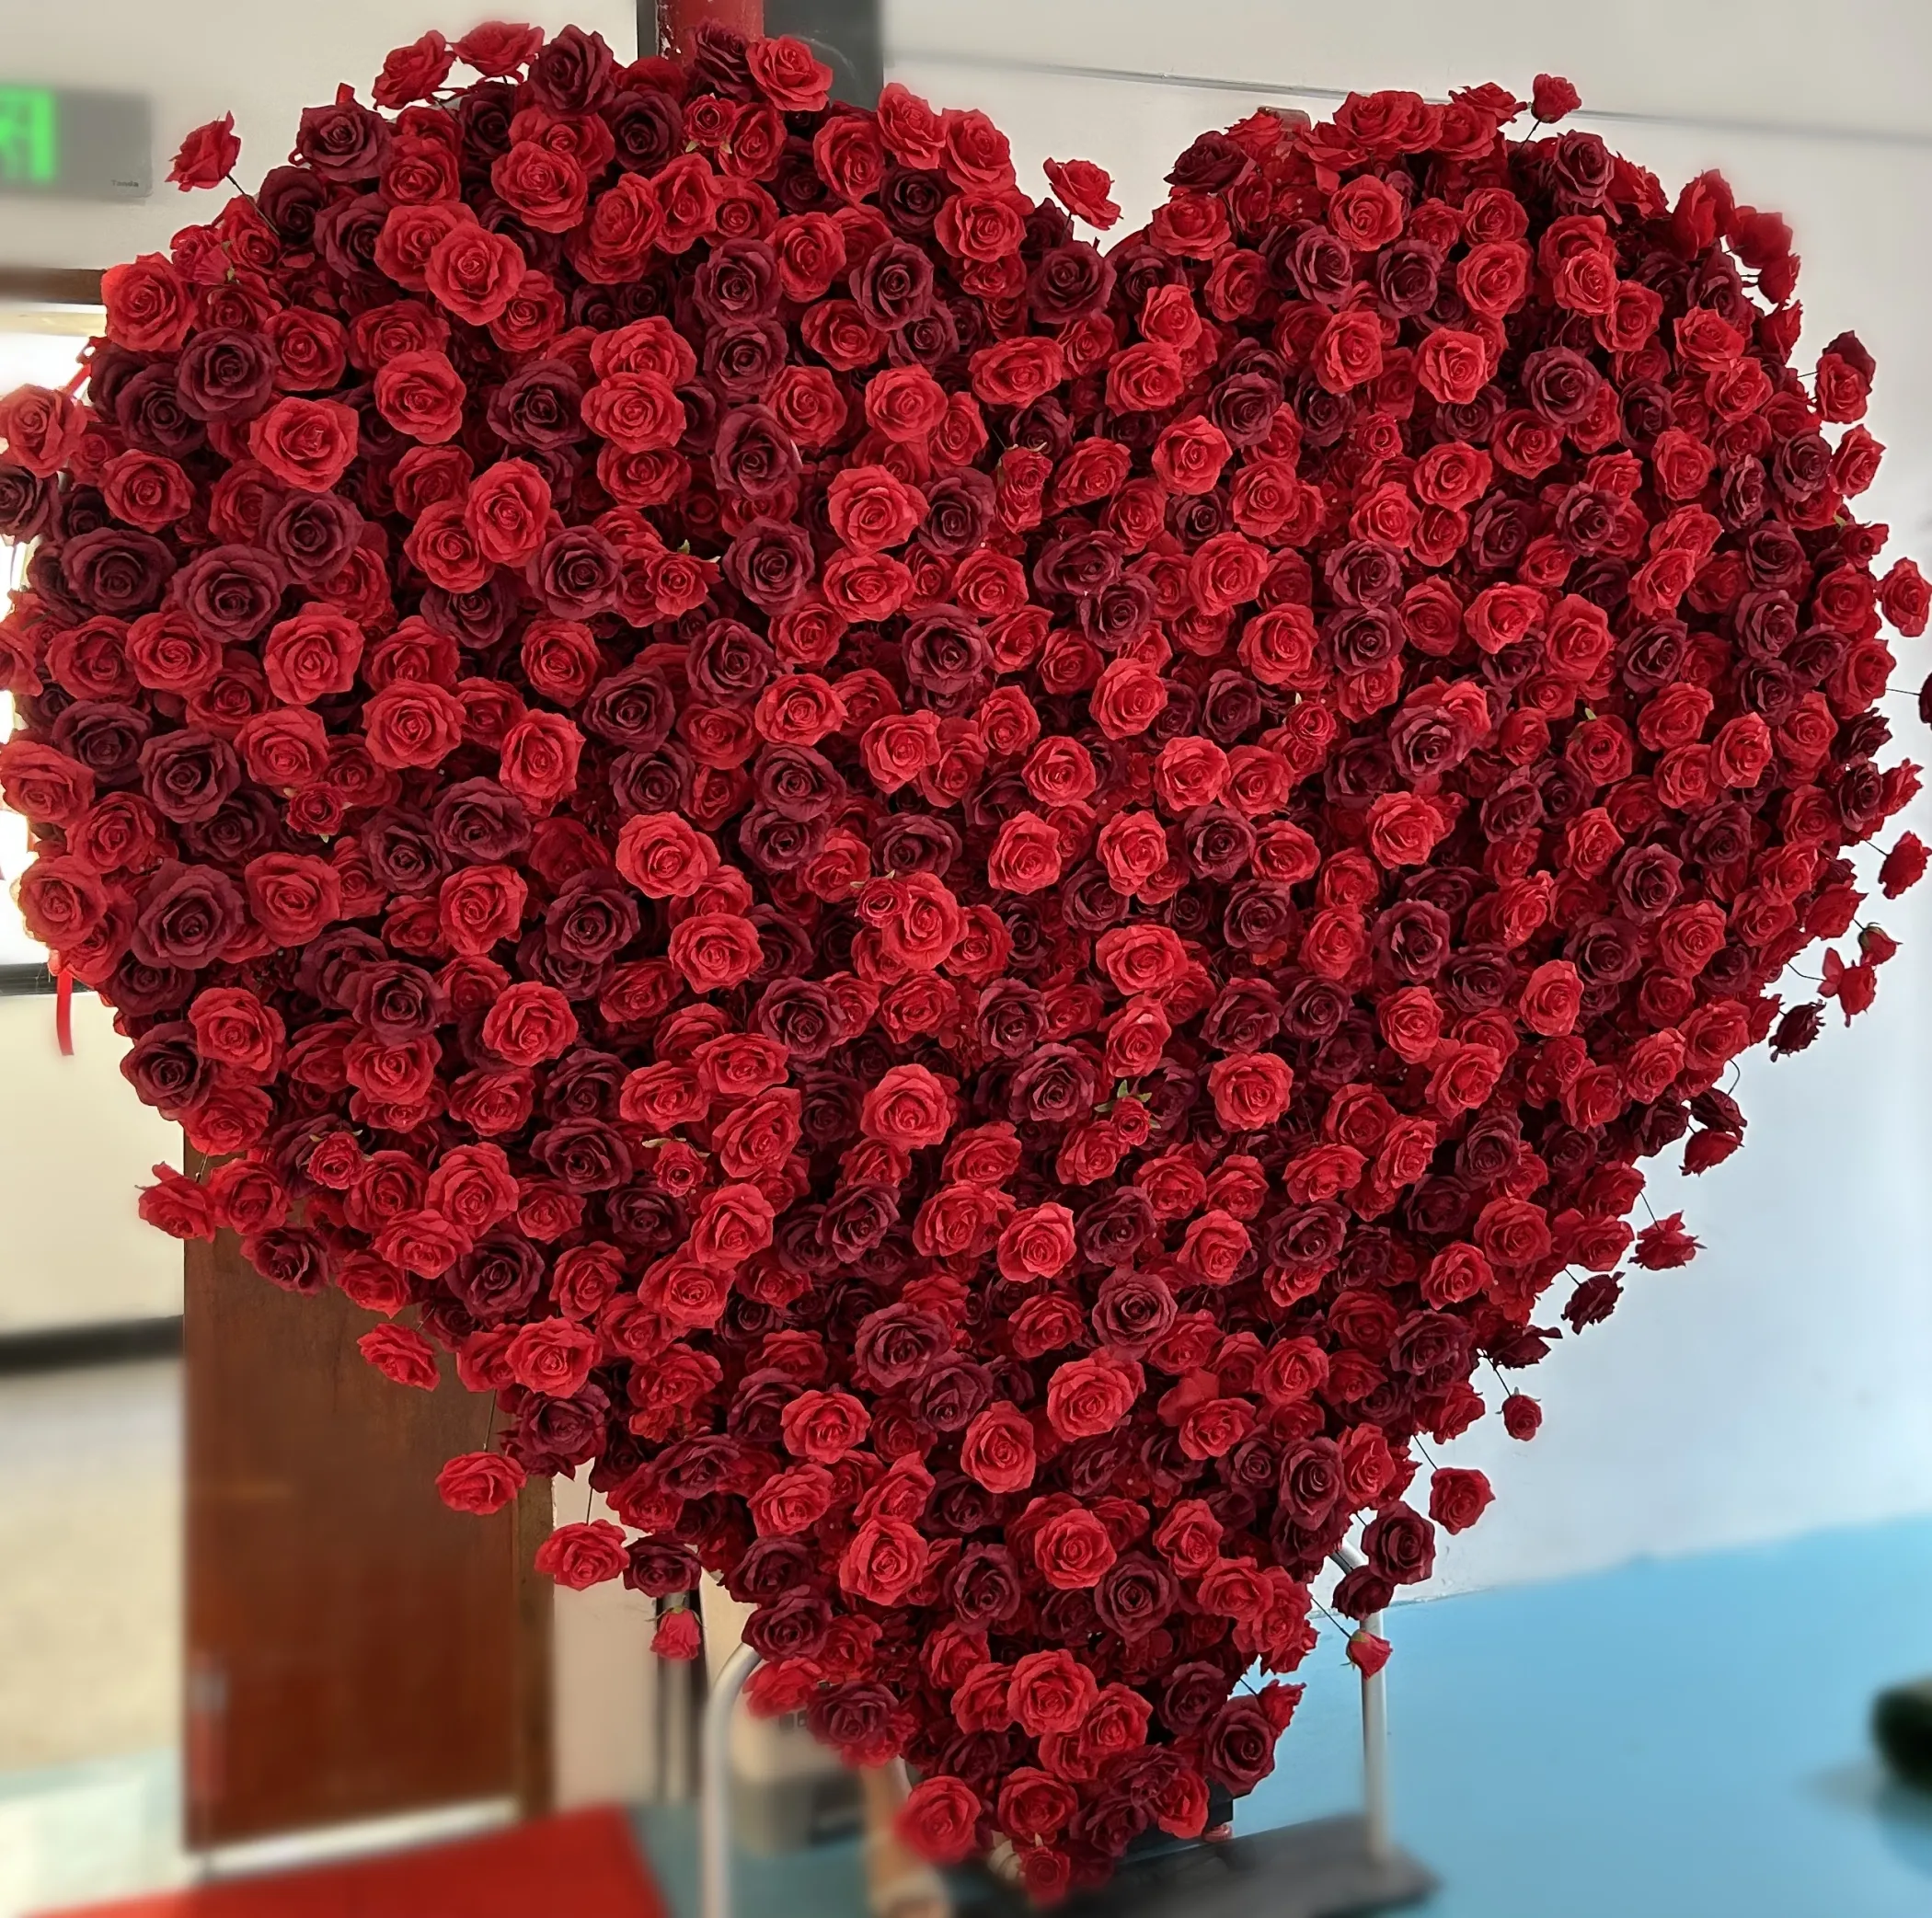 Hochzeitsdekoration Versorgung Hochzeitsantrag Herzform rotes Blumenarrangement Rose künstlicher blumenhartbogen Abdeckung Kulisse